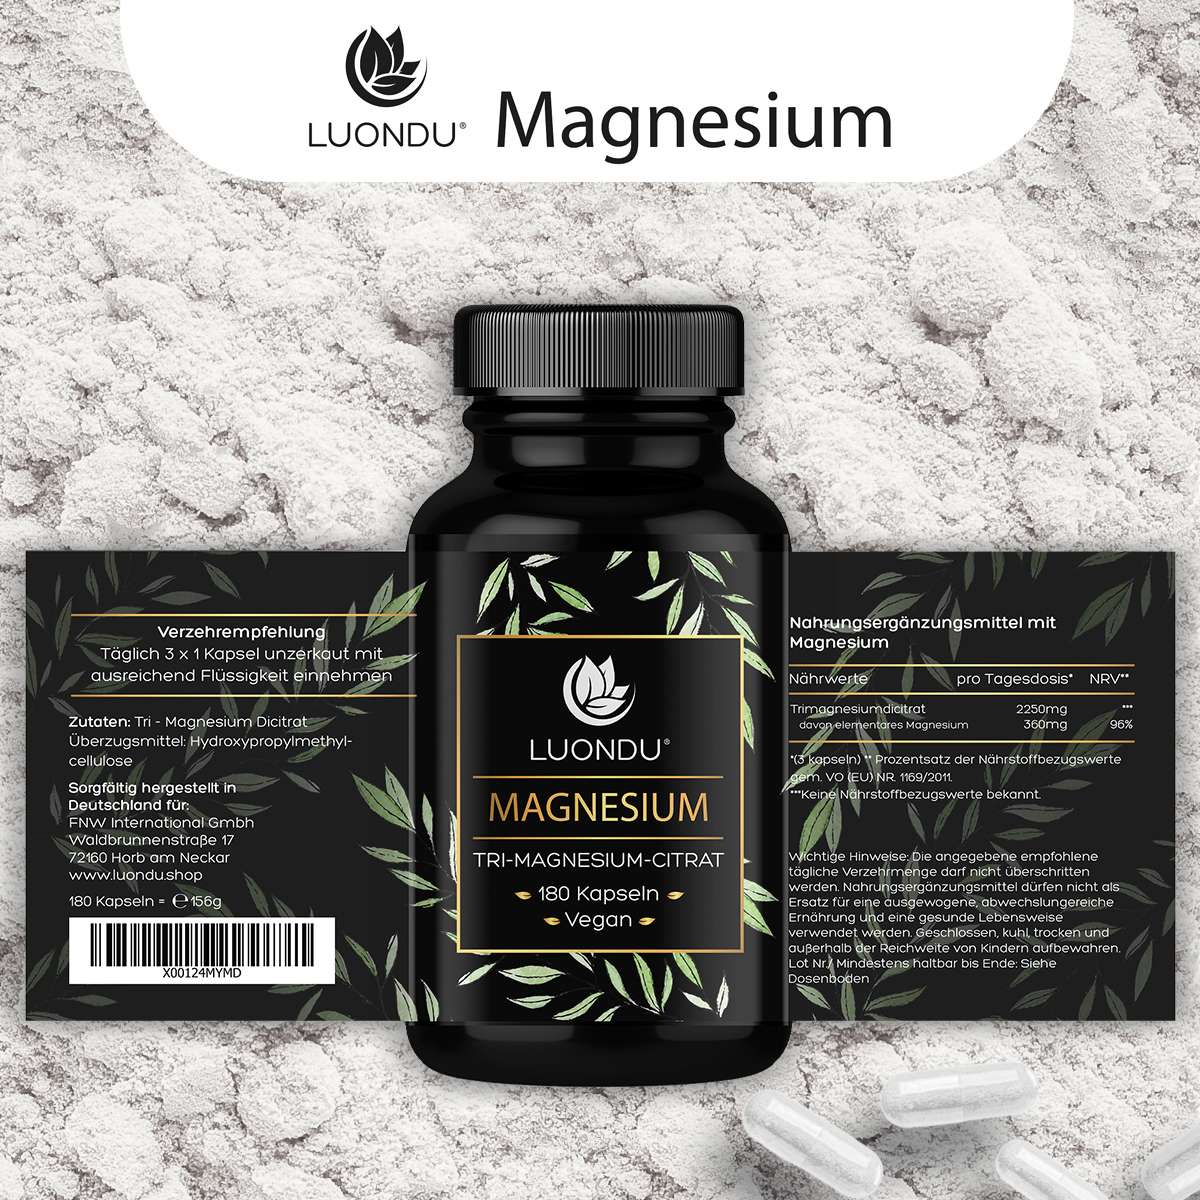 Luondu Magnesiumcitrat 750mg pro Kapsel 125mg elementares Magnesium